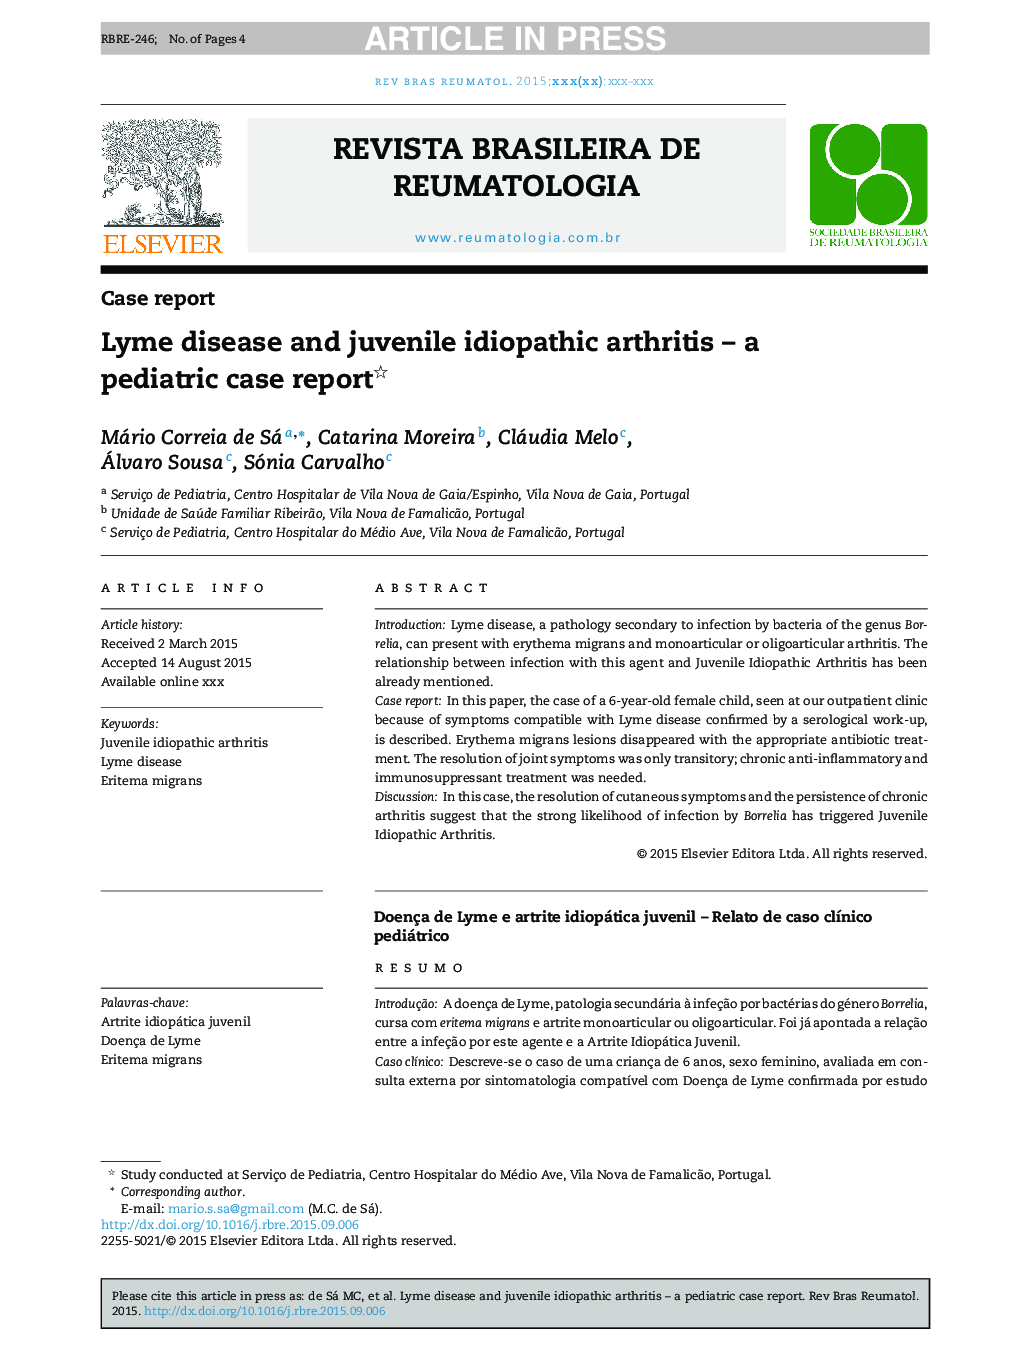 بیماری لیم و آرتریت ایدیوپاتیک نوجوانان - یک گزارش بیماری کودکان 